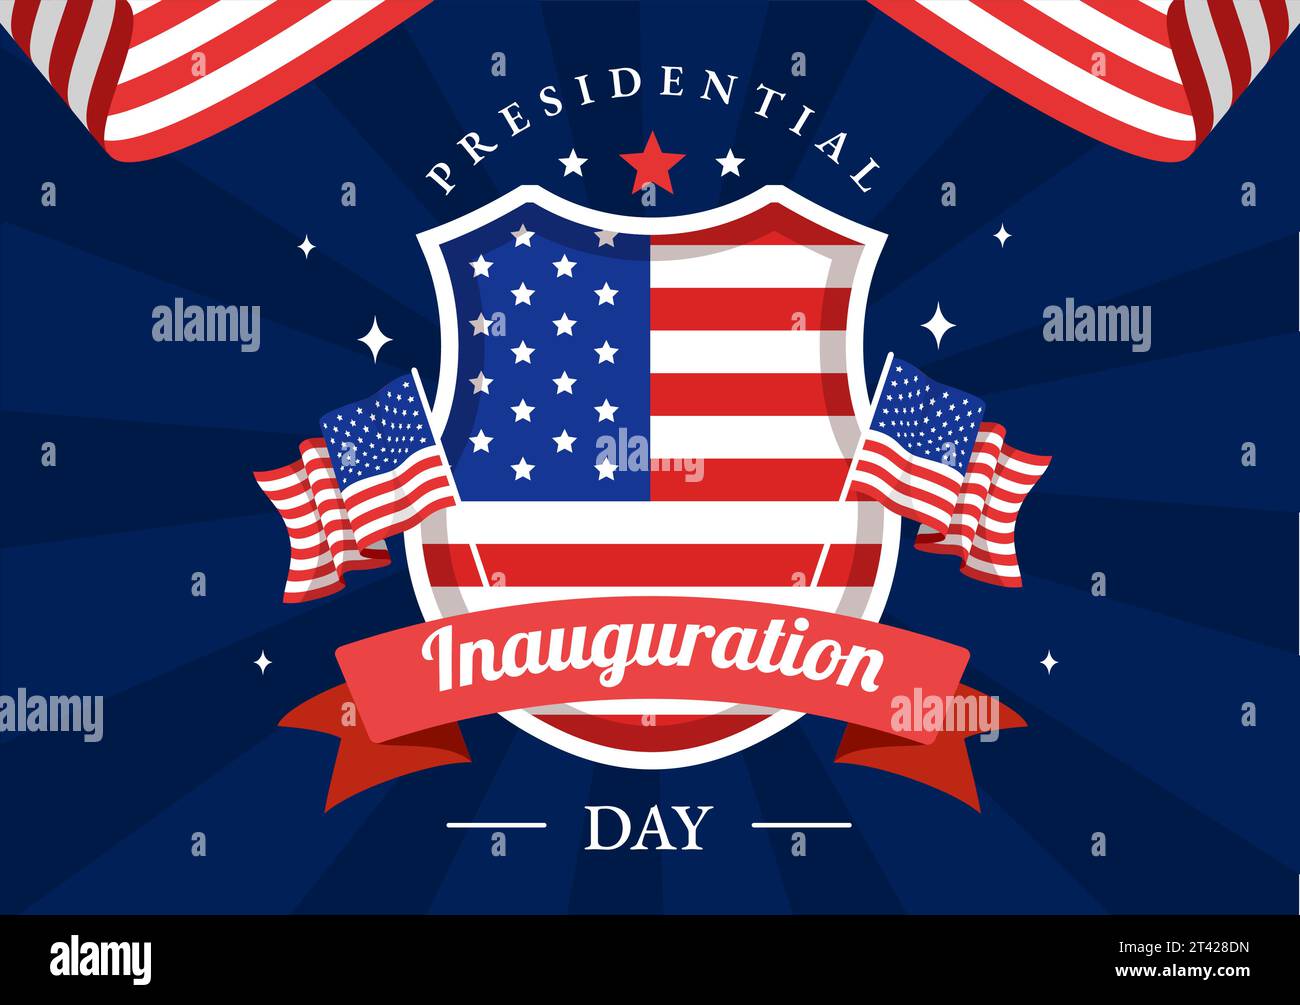 USA Präsidenteneinweihung Tag Vektor Illustration 20 Januar mit Kapitol Gebäude Washington D.C. und amerikanische Flagge im Hintergrund Design Stock Vektor